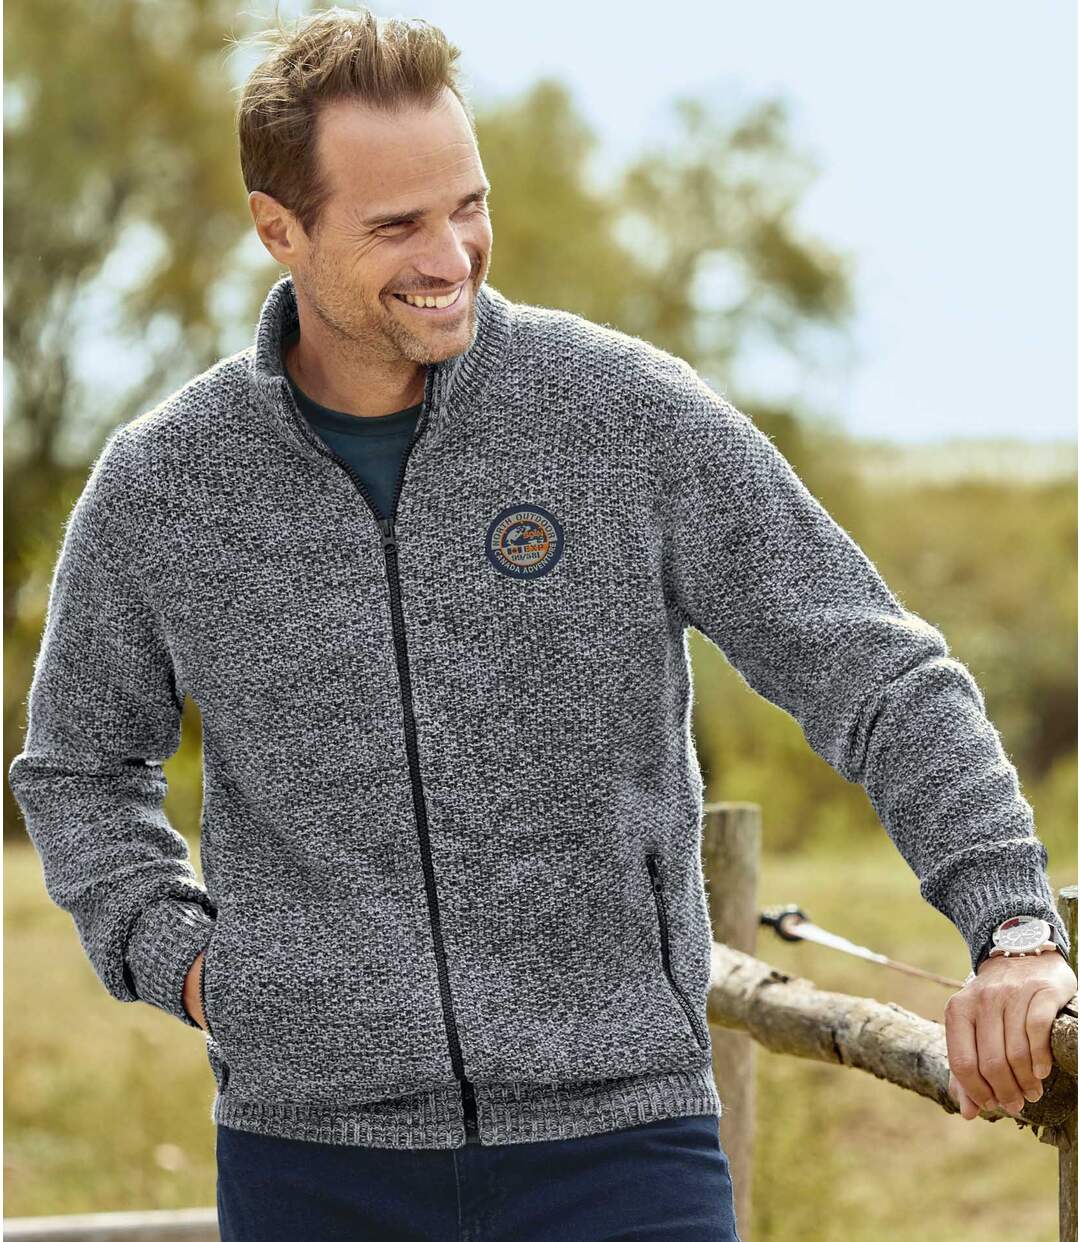 Men's Grey Knitted Jacket - Full Zip Atlas For Men